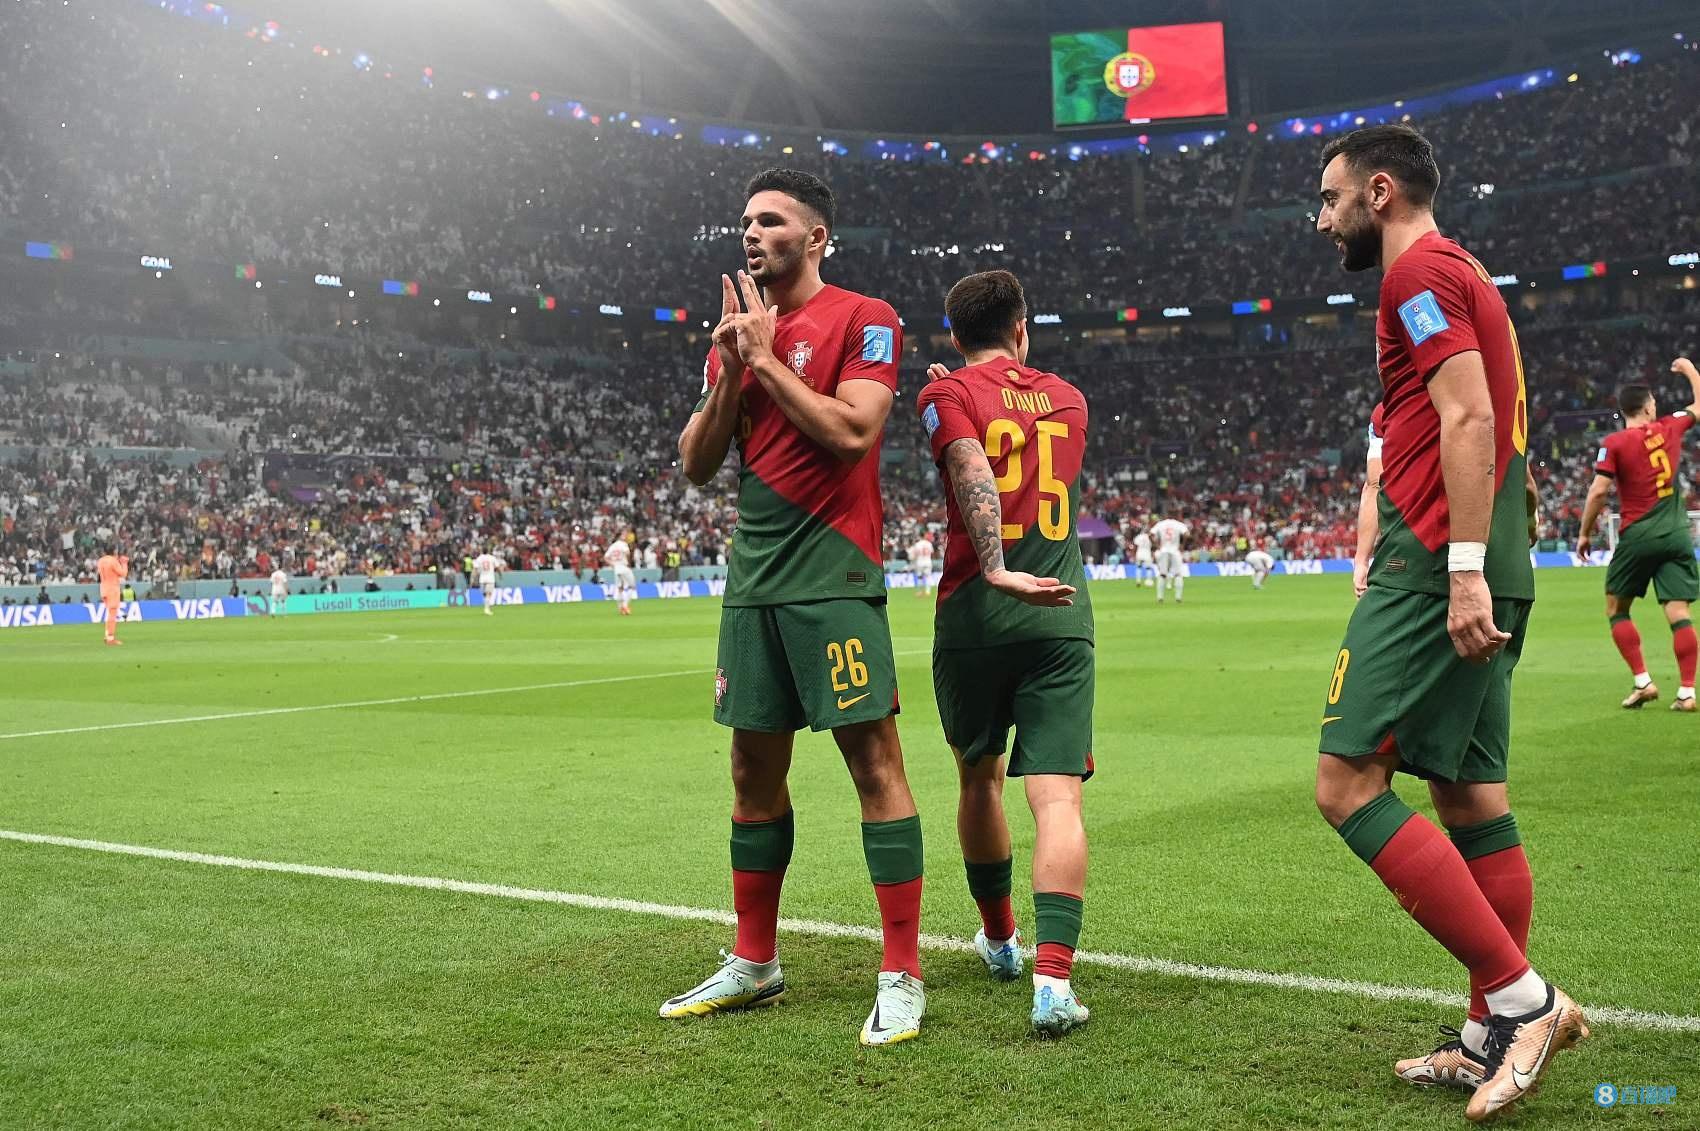 早报：葡萄牙、摩洛哥晋级，世界杯1/4决赛完整对阵出炉